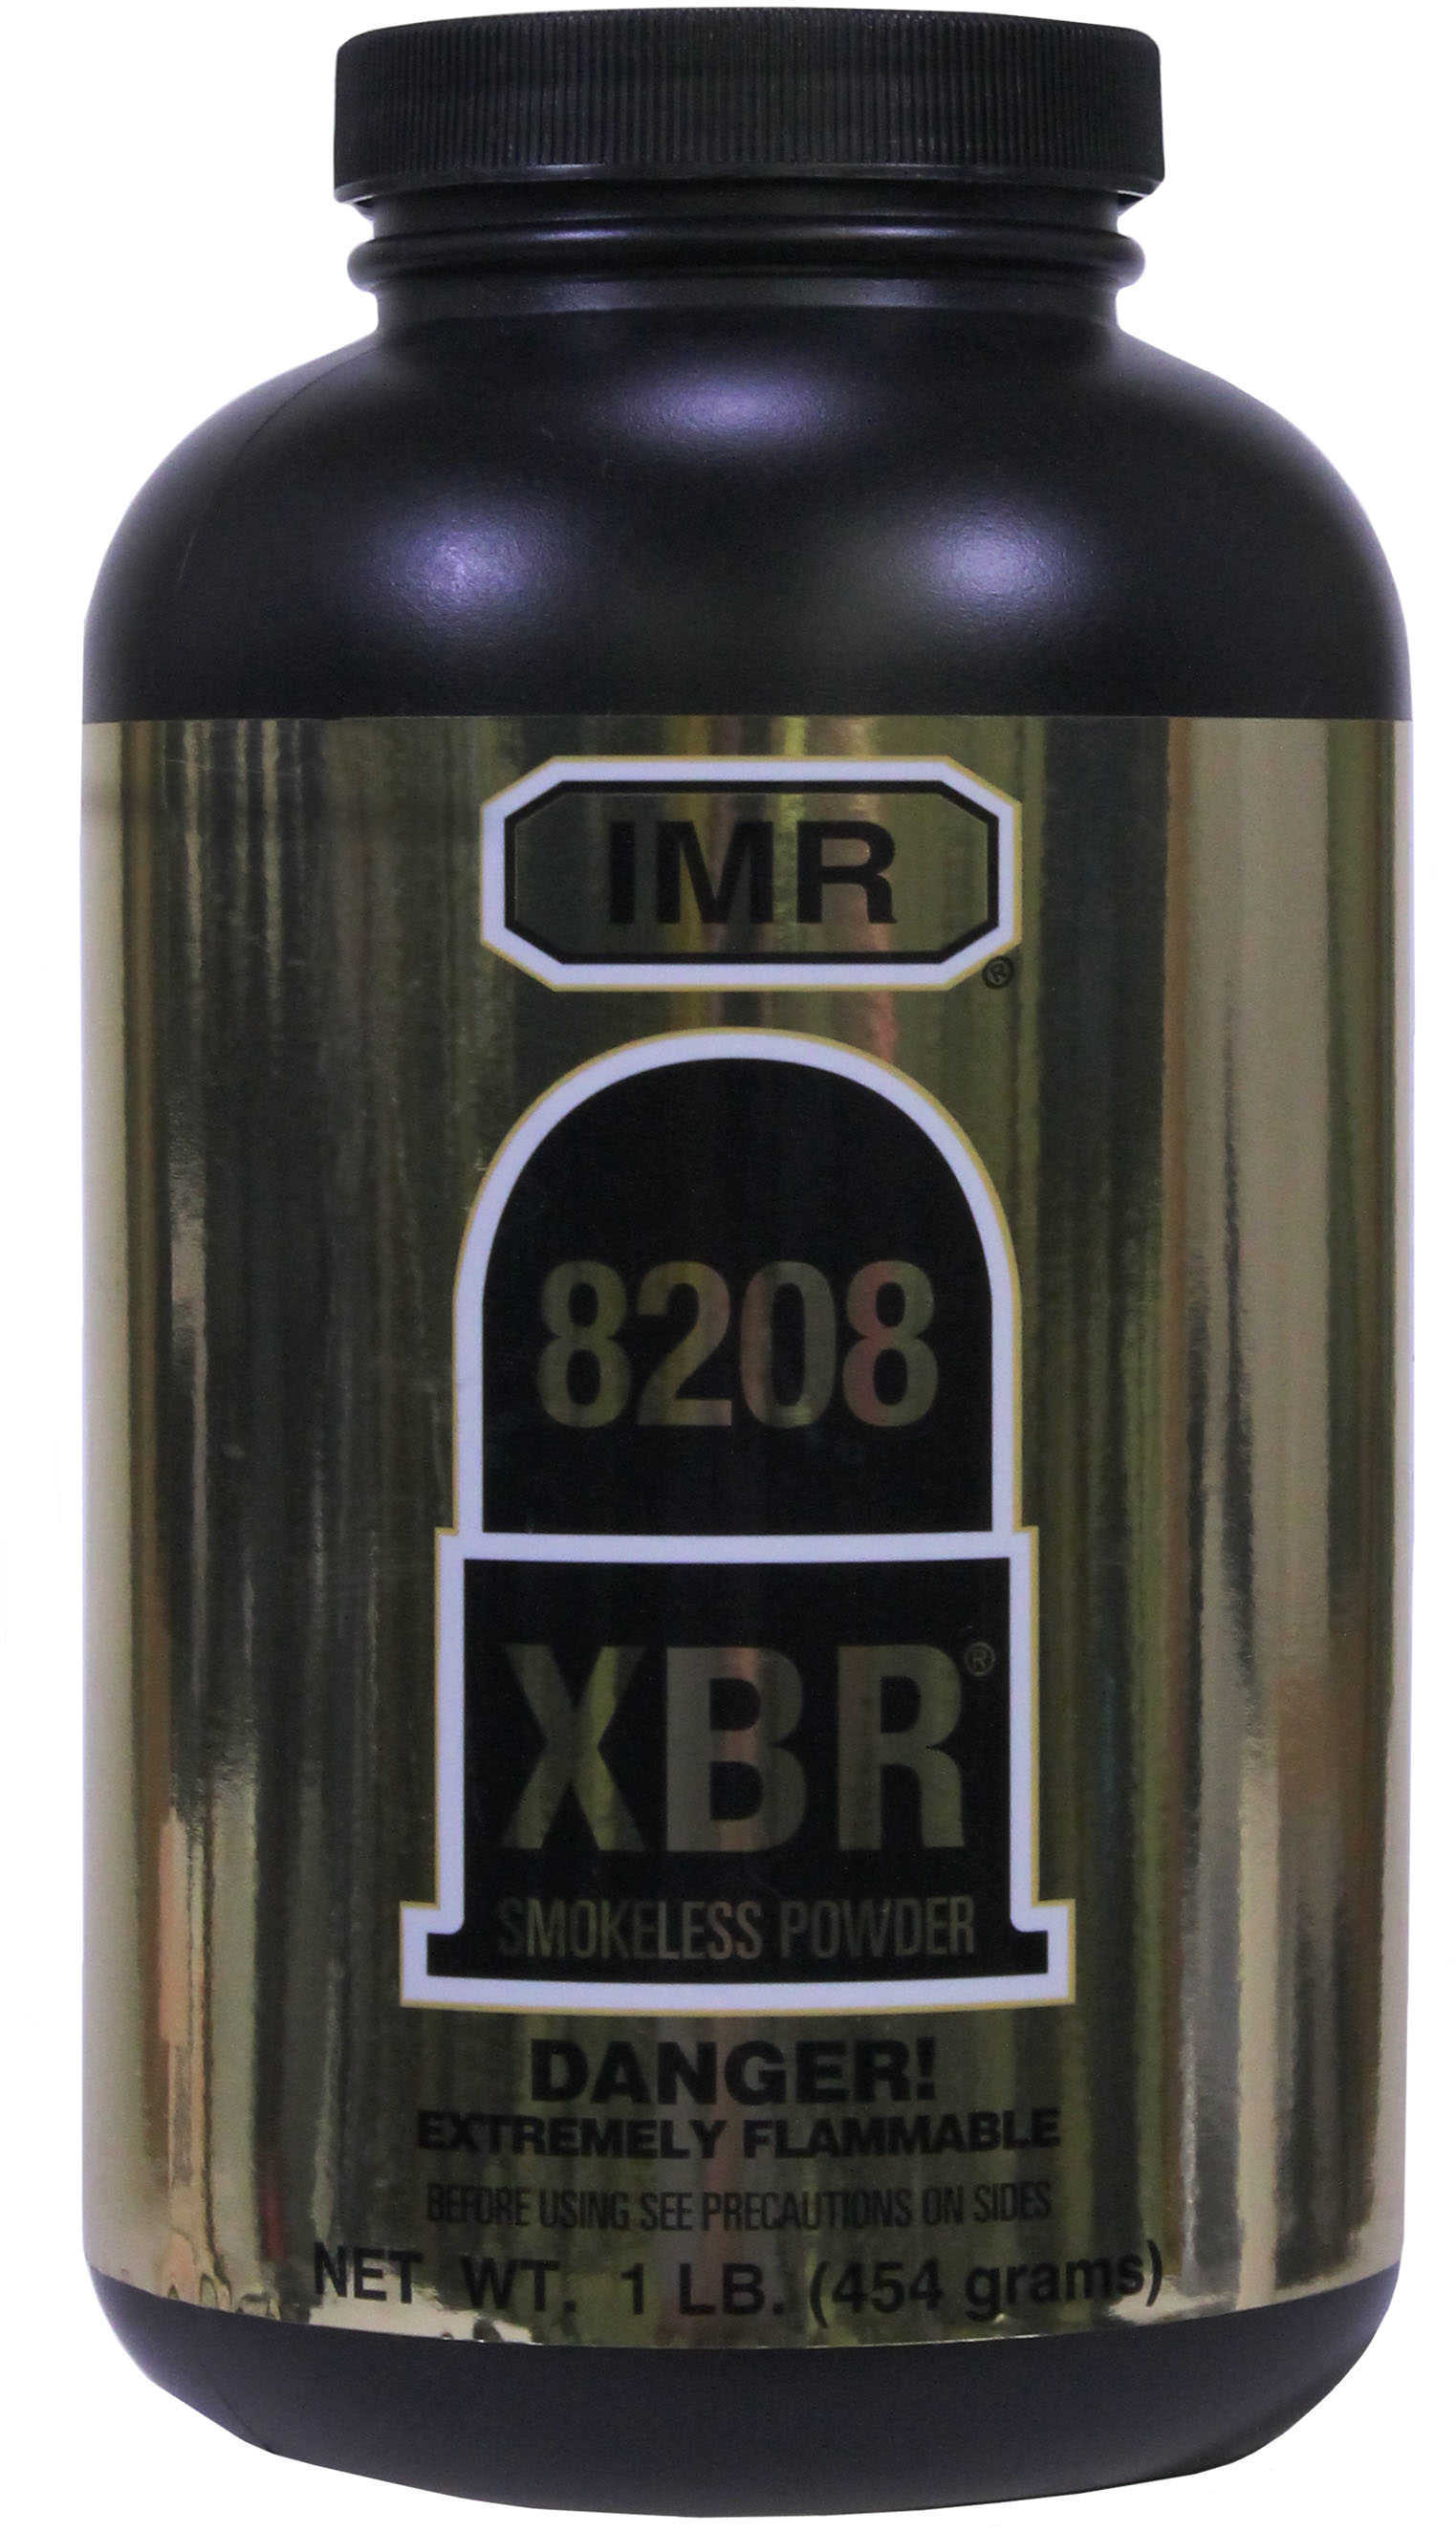 IMR Powder 8208 XBR 1Lb